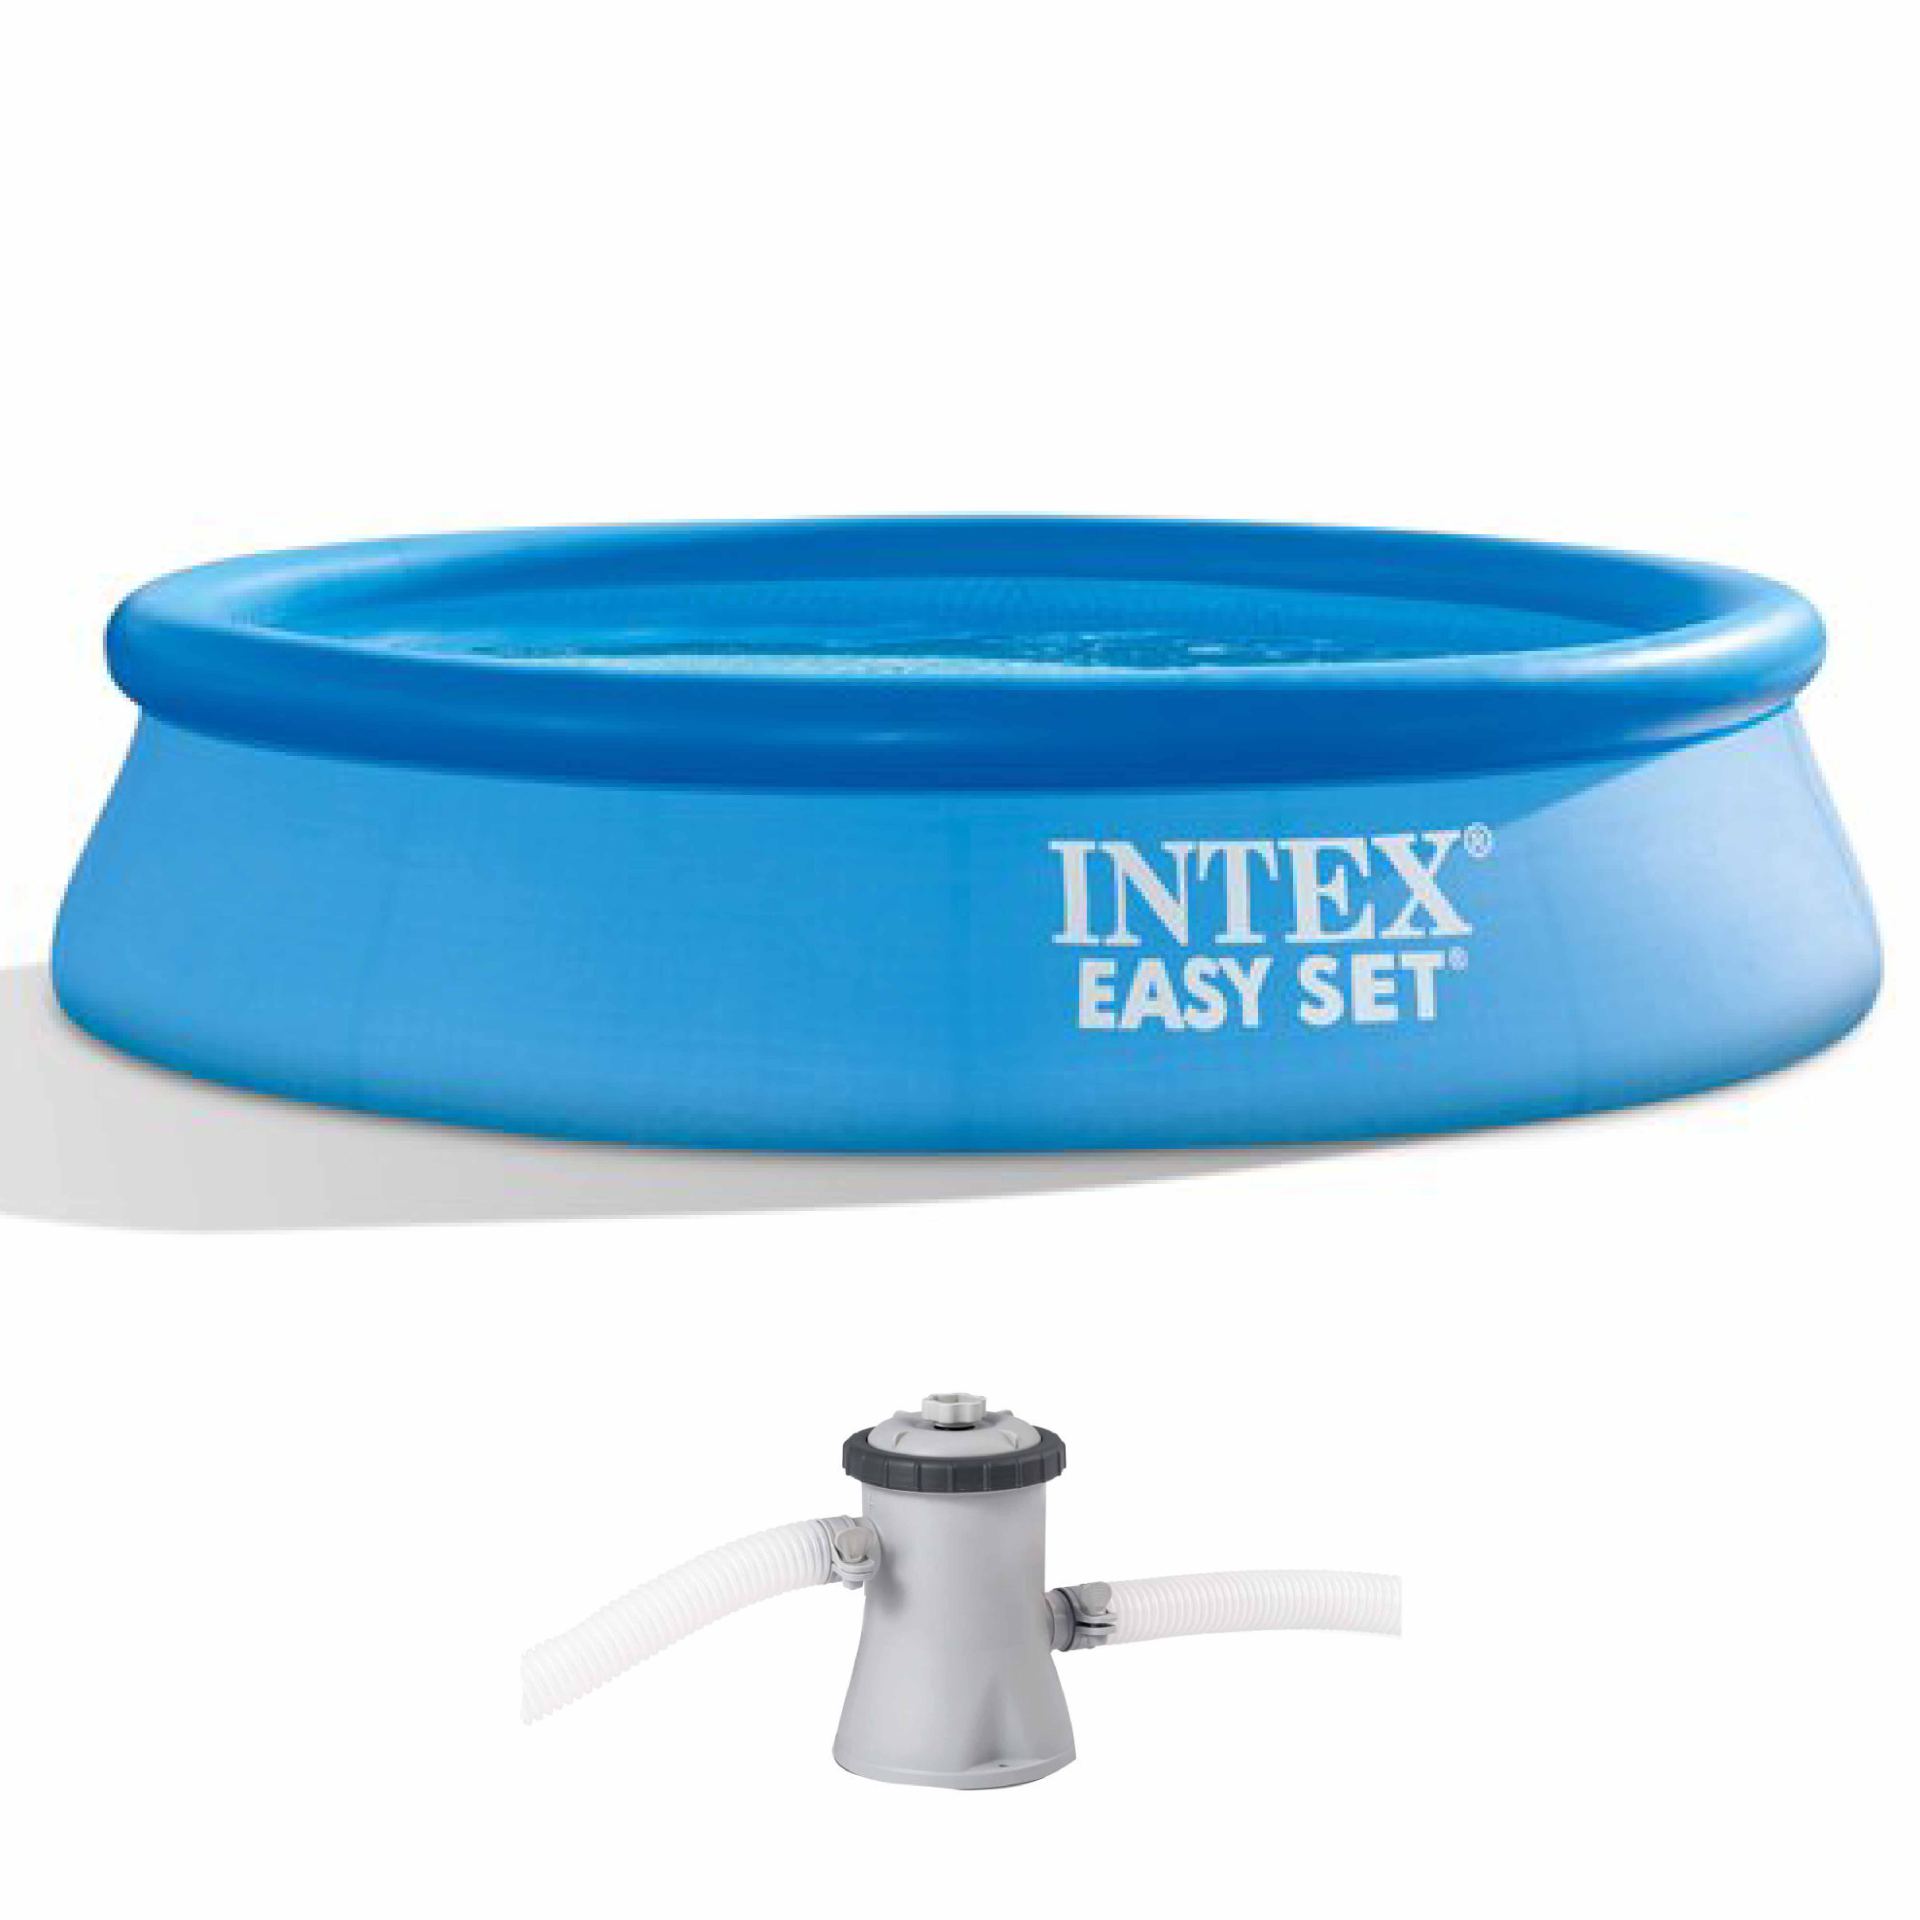 Intex easy set pool set 305cm x 61cm